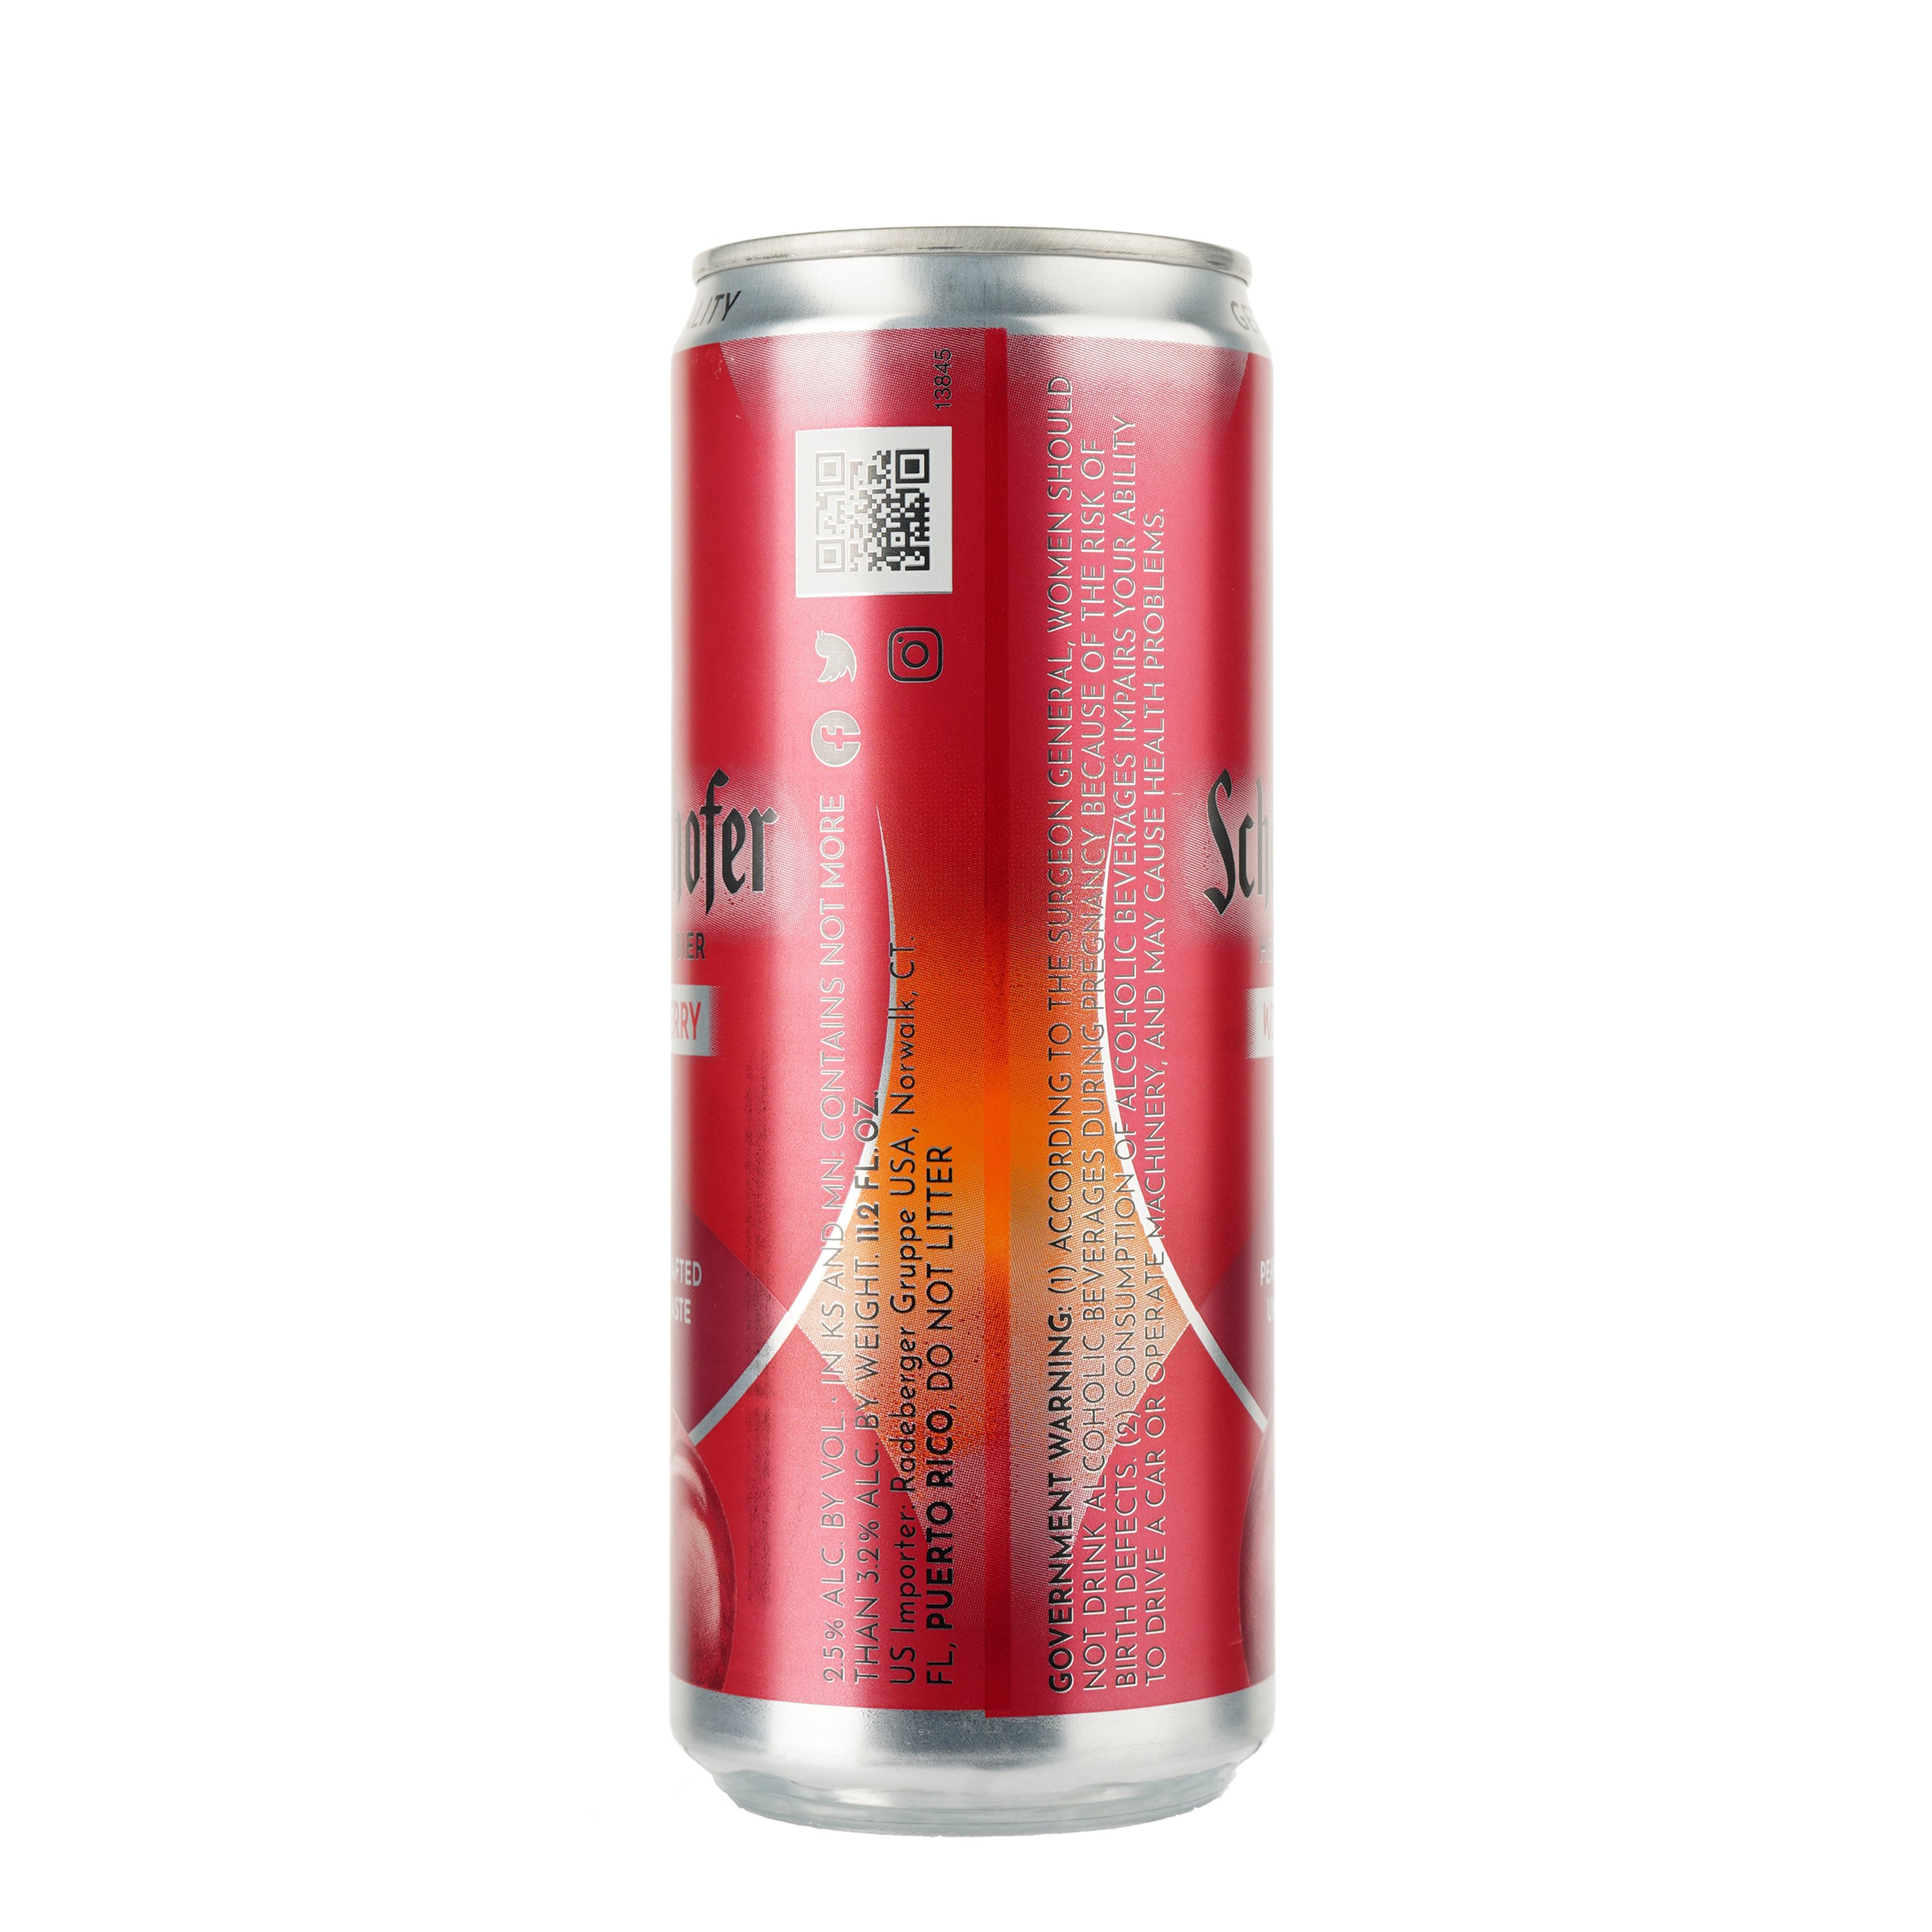 Пиво Schofferhofer Wild Cherry світле нефільтроване з соком, 2.5%, з/б, 0.33 л - фото 2